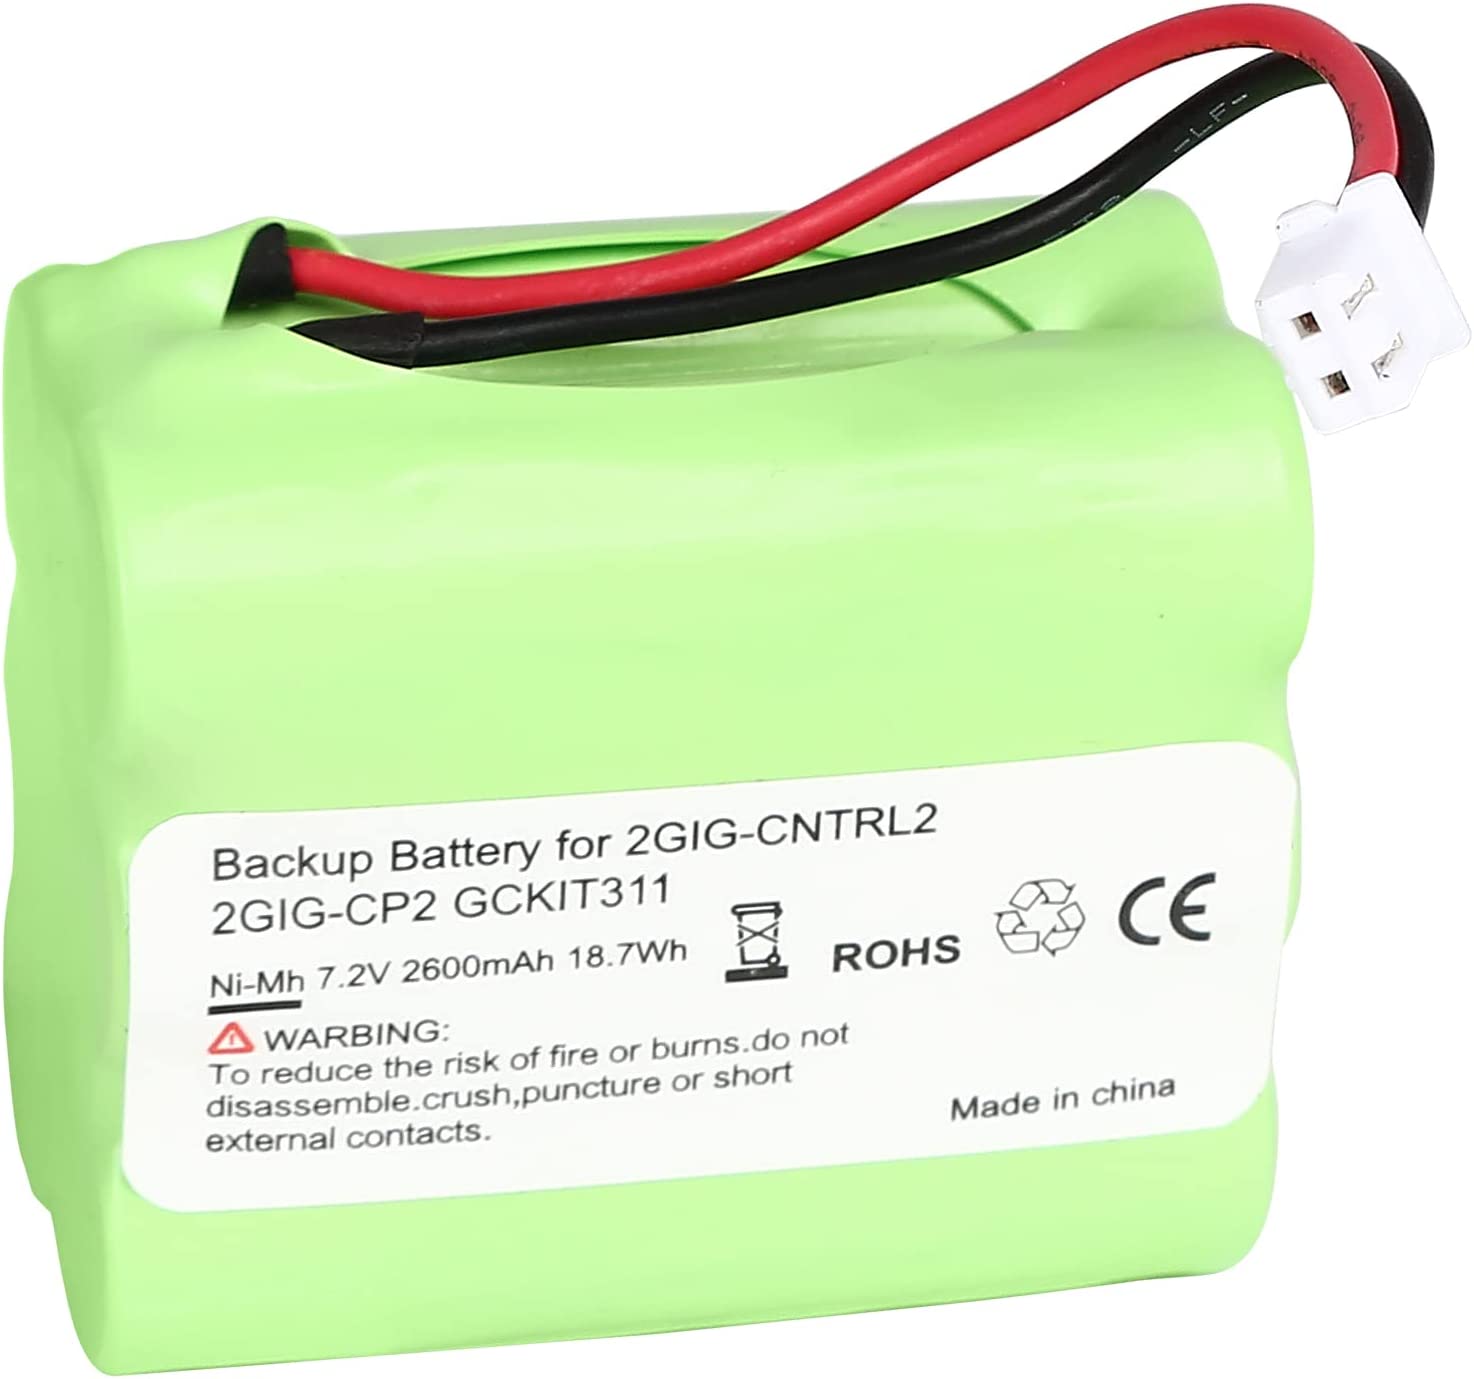 Fits For 2gig BATT1X BATT2X BATT1 GC2 2GIG-CNTRL2 Replacement Battery - Battery World